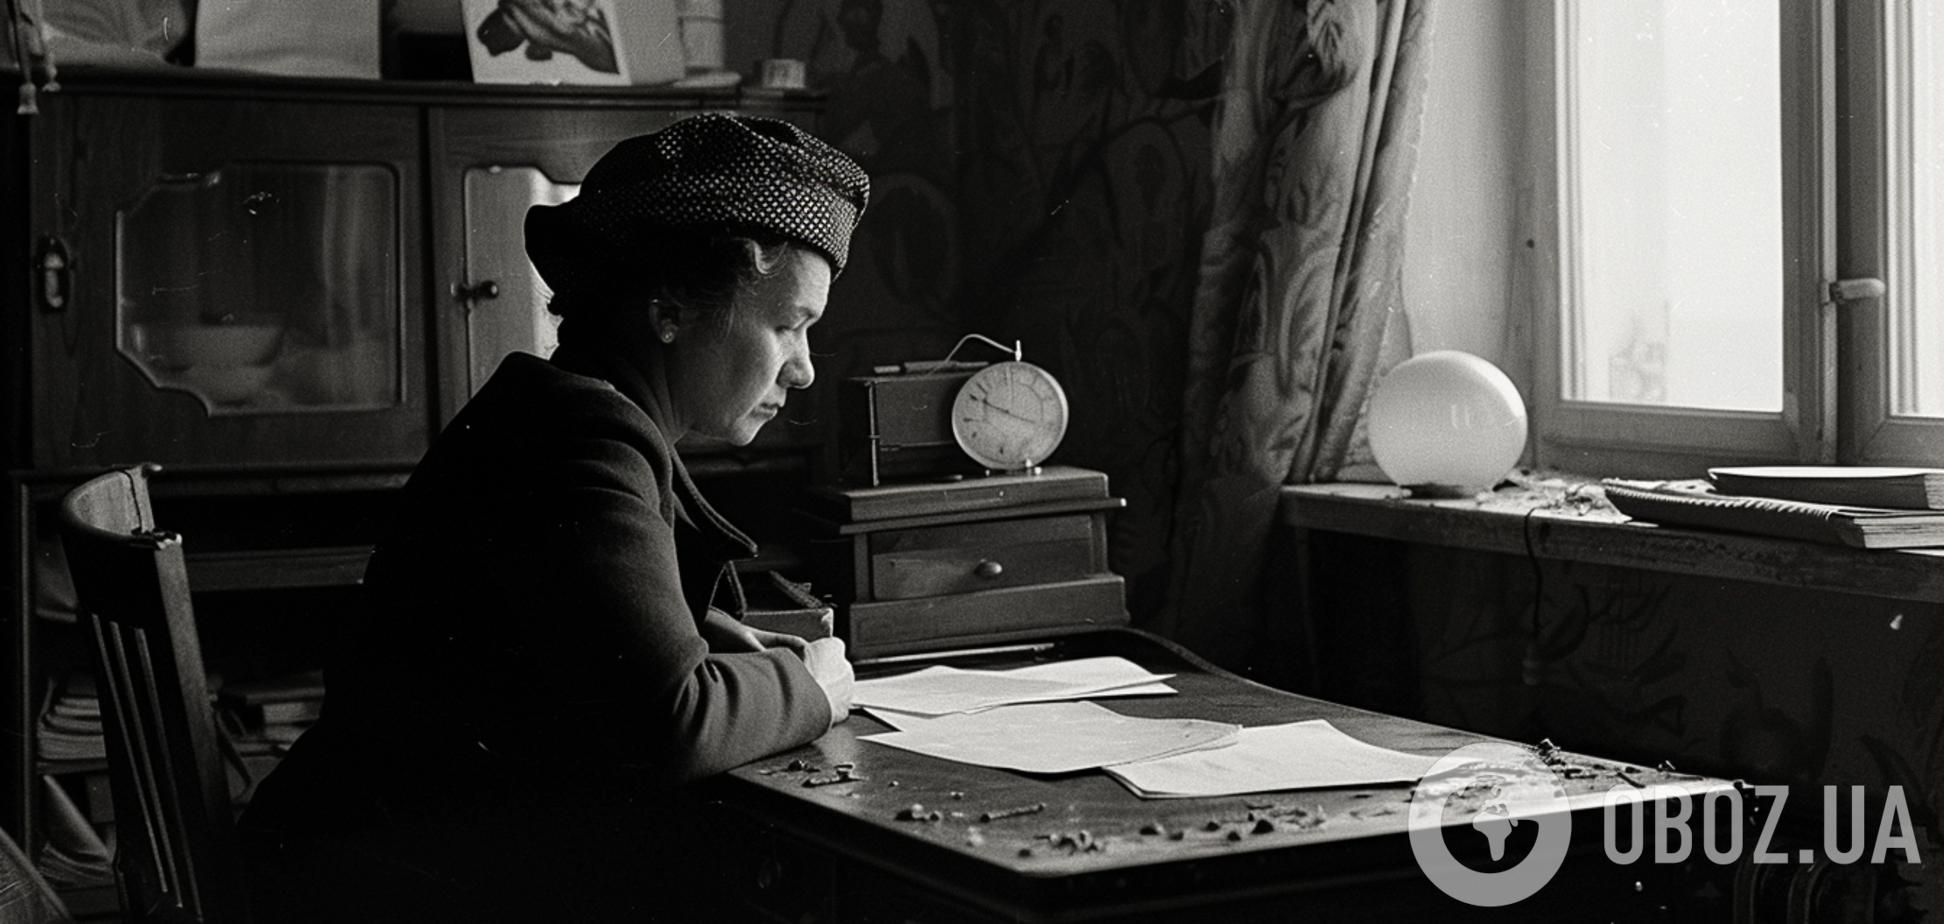 Чому в СРСР жінки рідко знімали шапку у приміщенні: цікаве пояснення